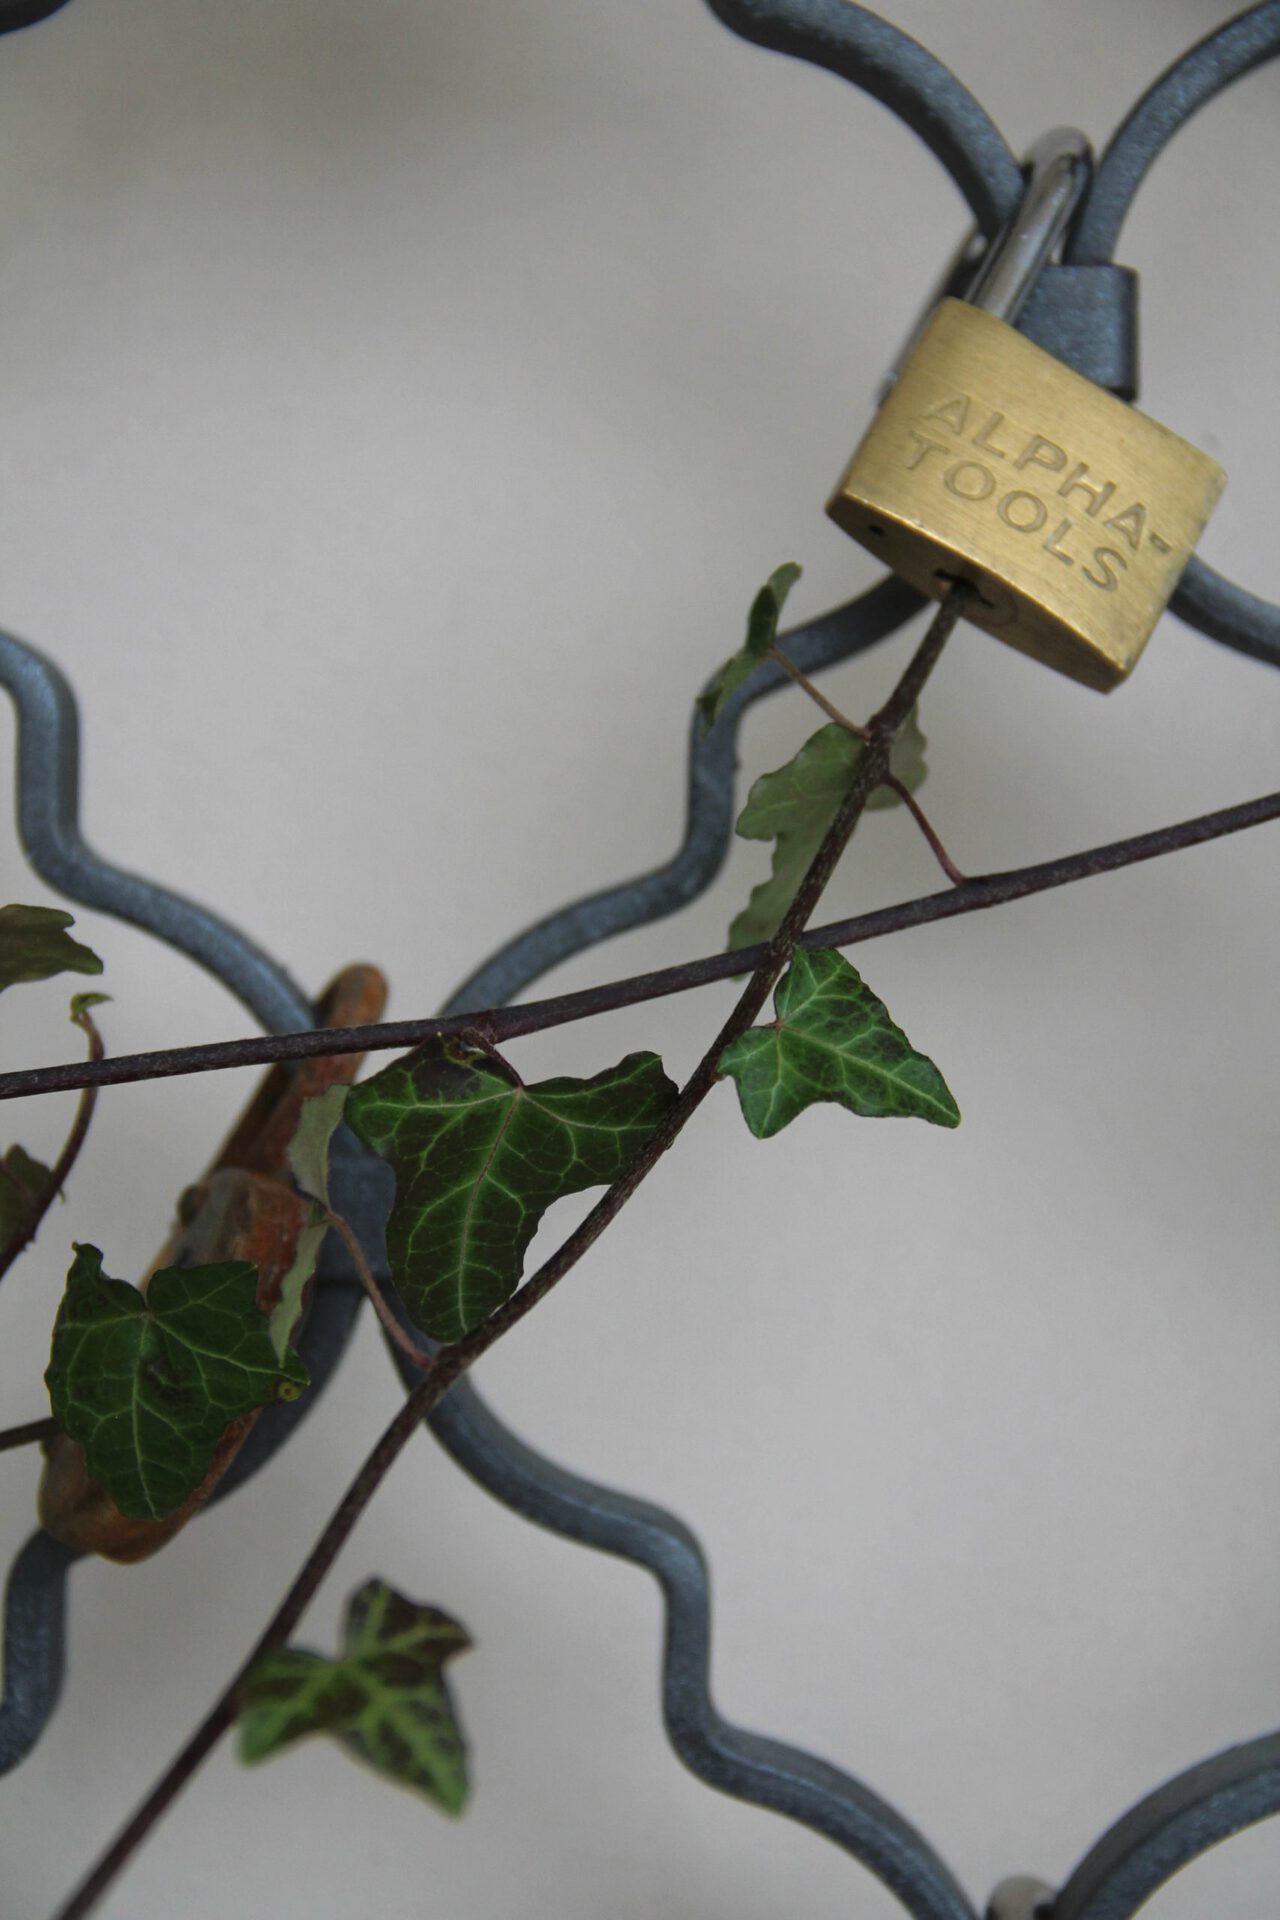 Untitled (lockpicking Ivy)(detail), 2020, powder-coated grid, common ivy (Hedera helix), cracked locks